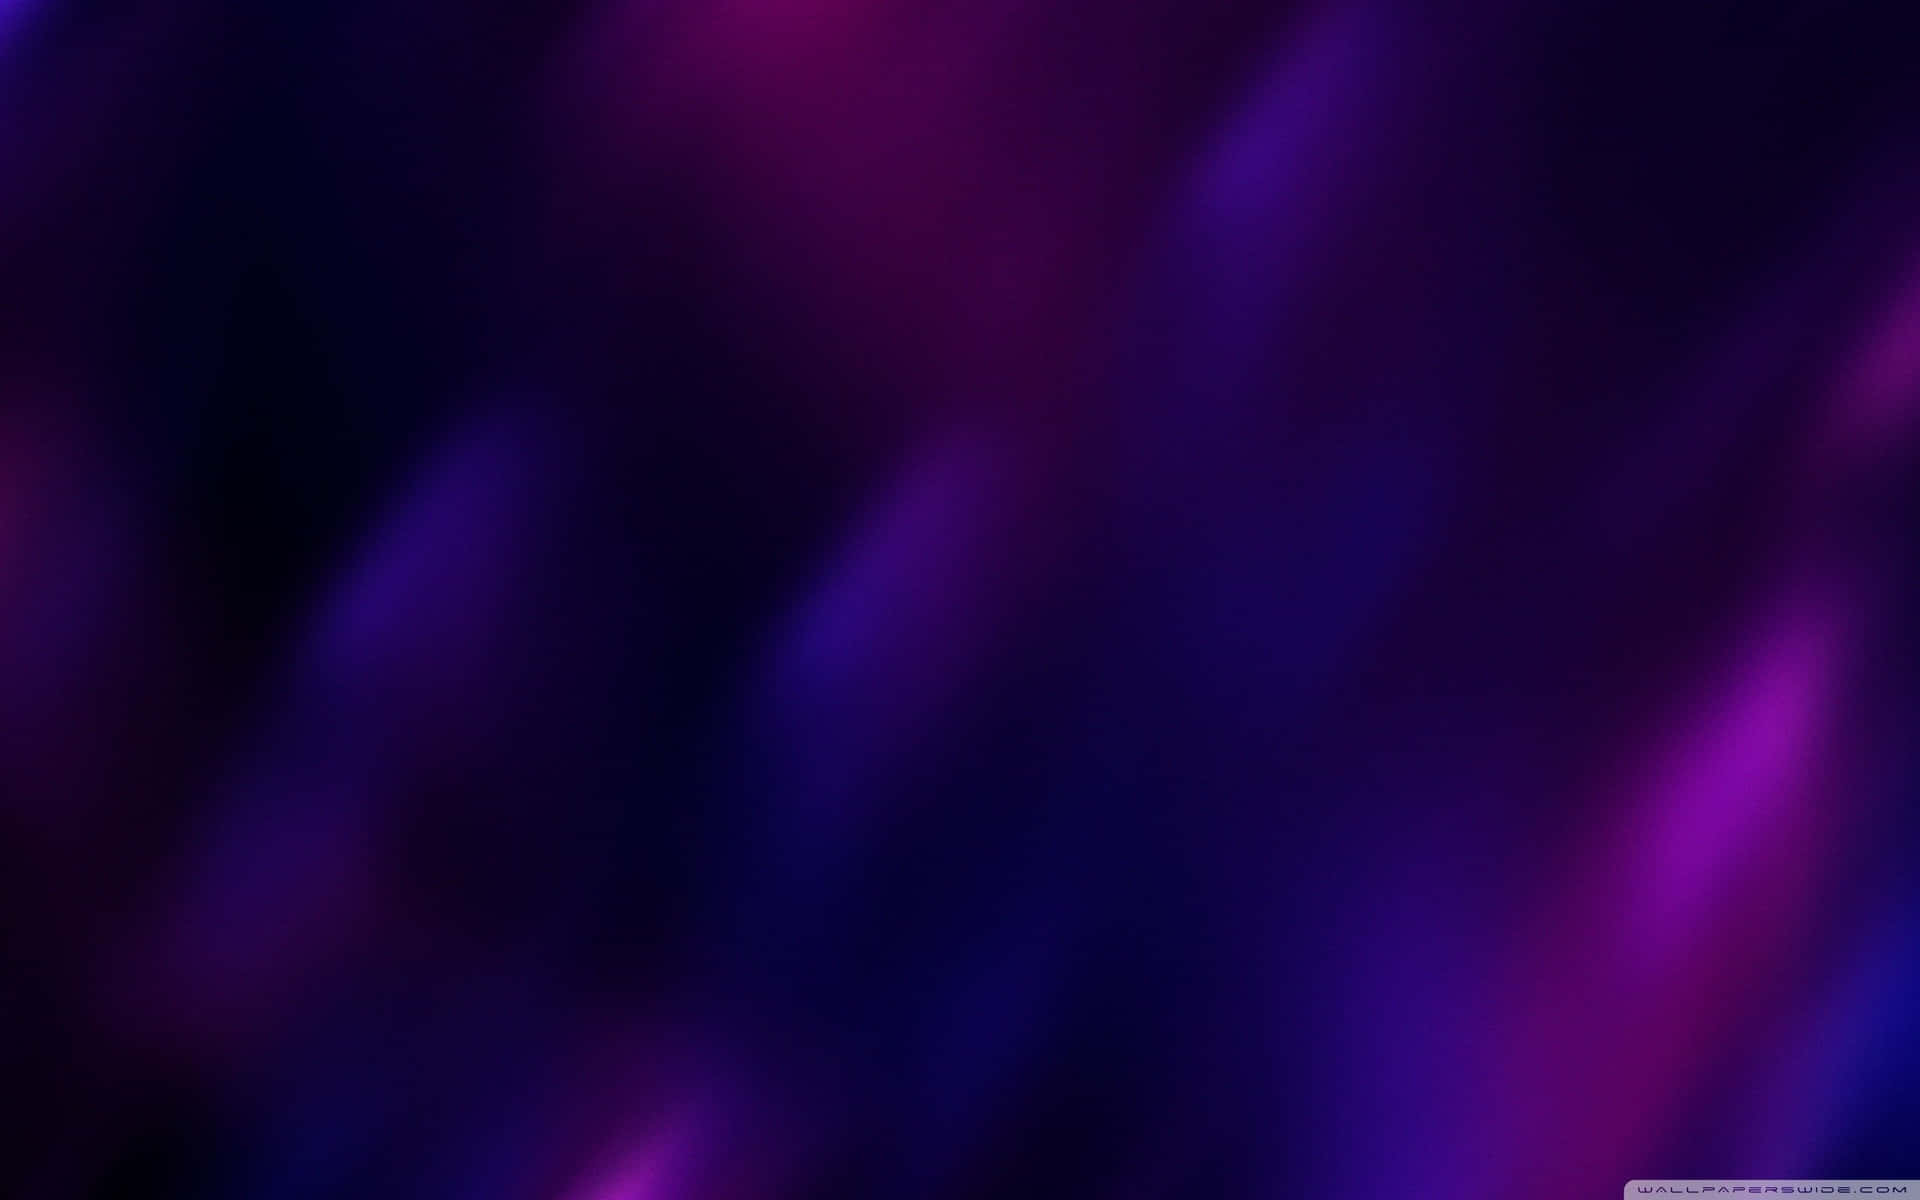 Eindesktop Mit Einer Wunderschönen Blau-violetten Farbkombination. Wallpaper